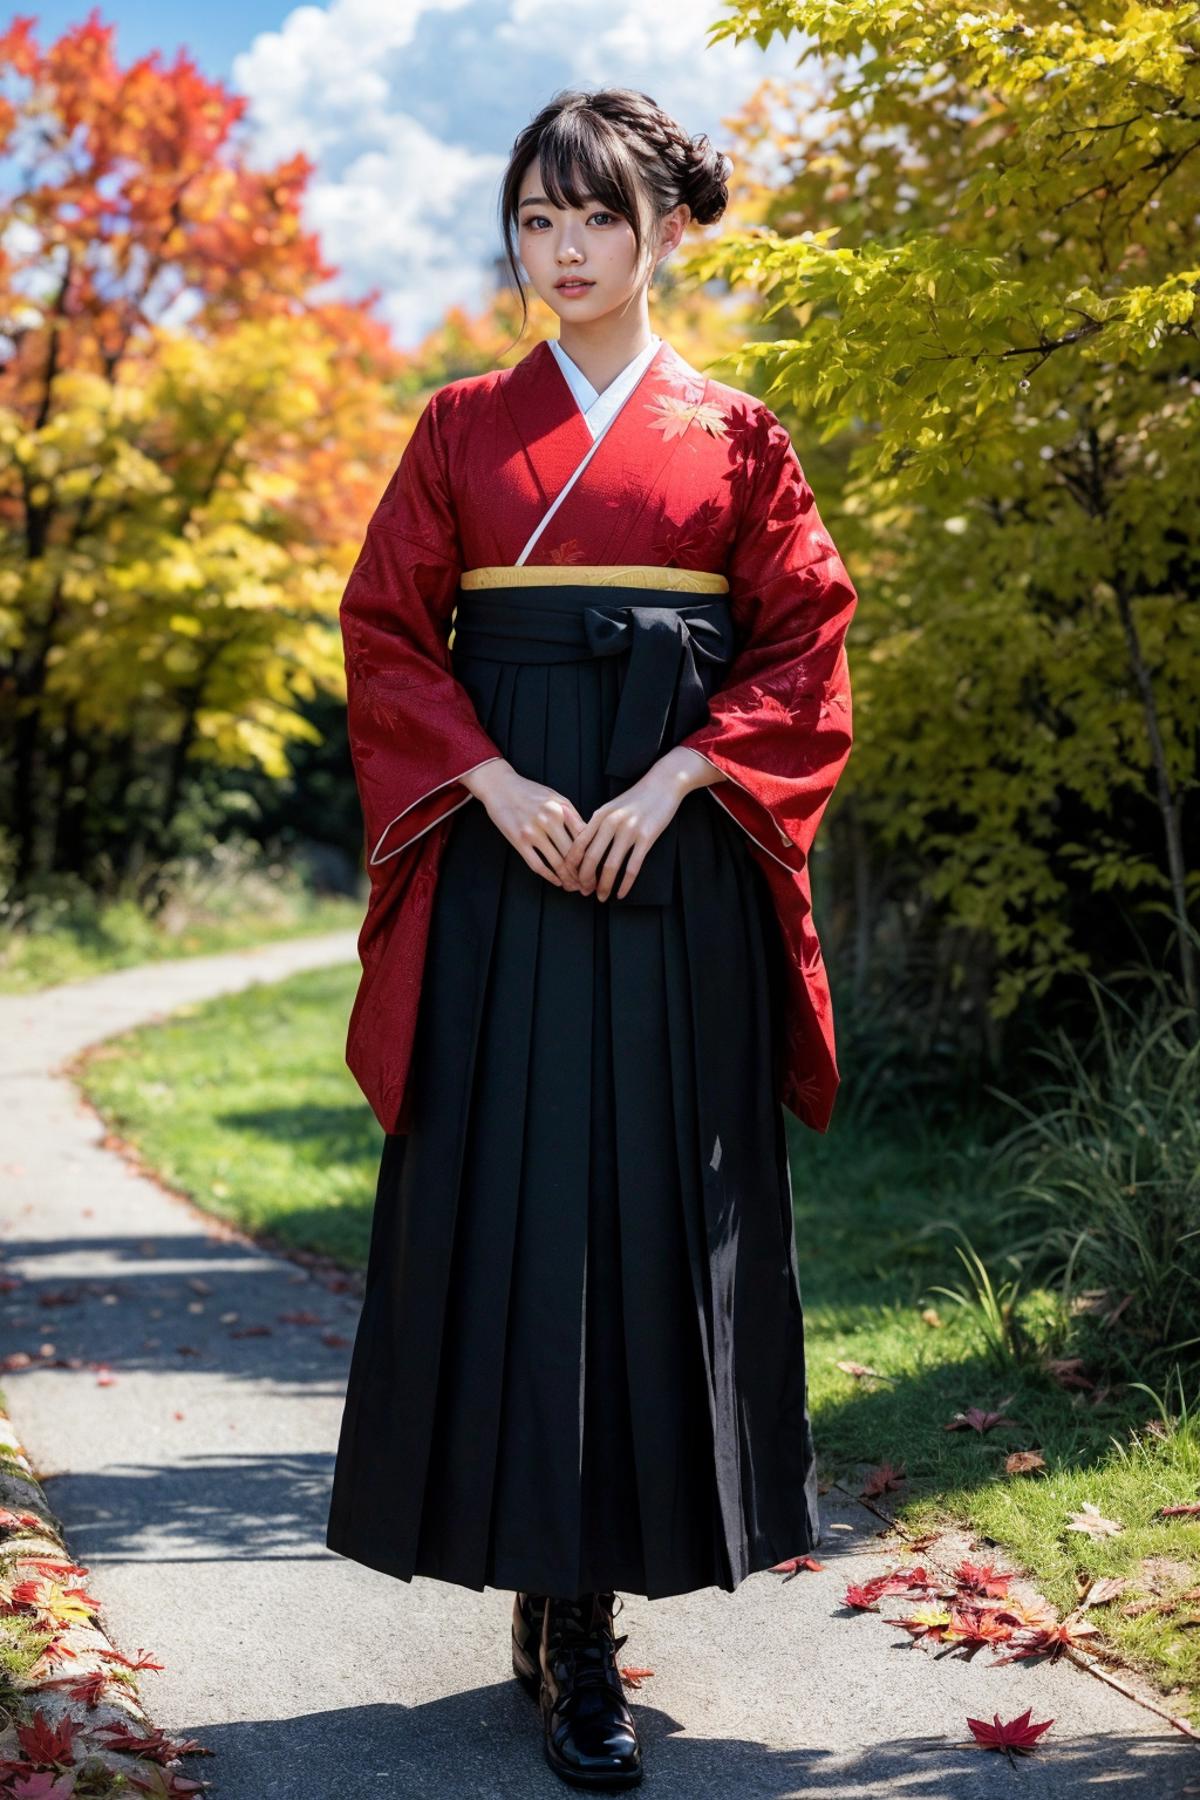 袴少女 hakama girl 和服裤裙 hakama skirt image by feetie